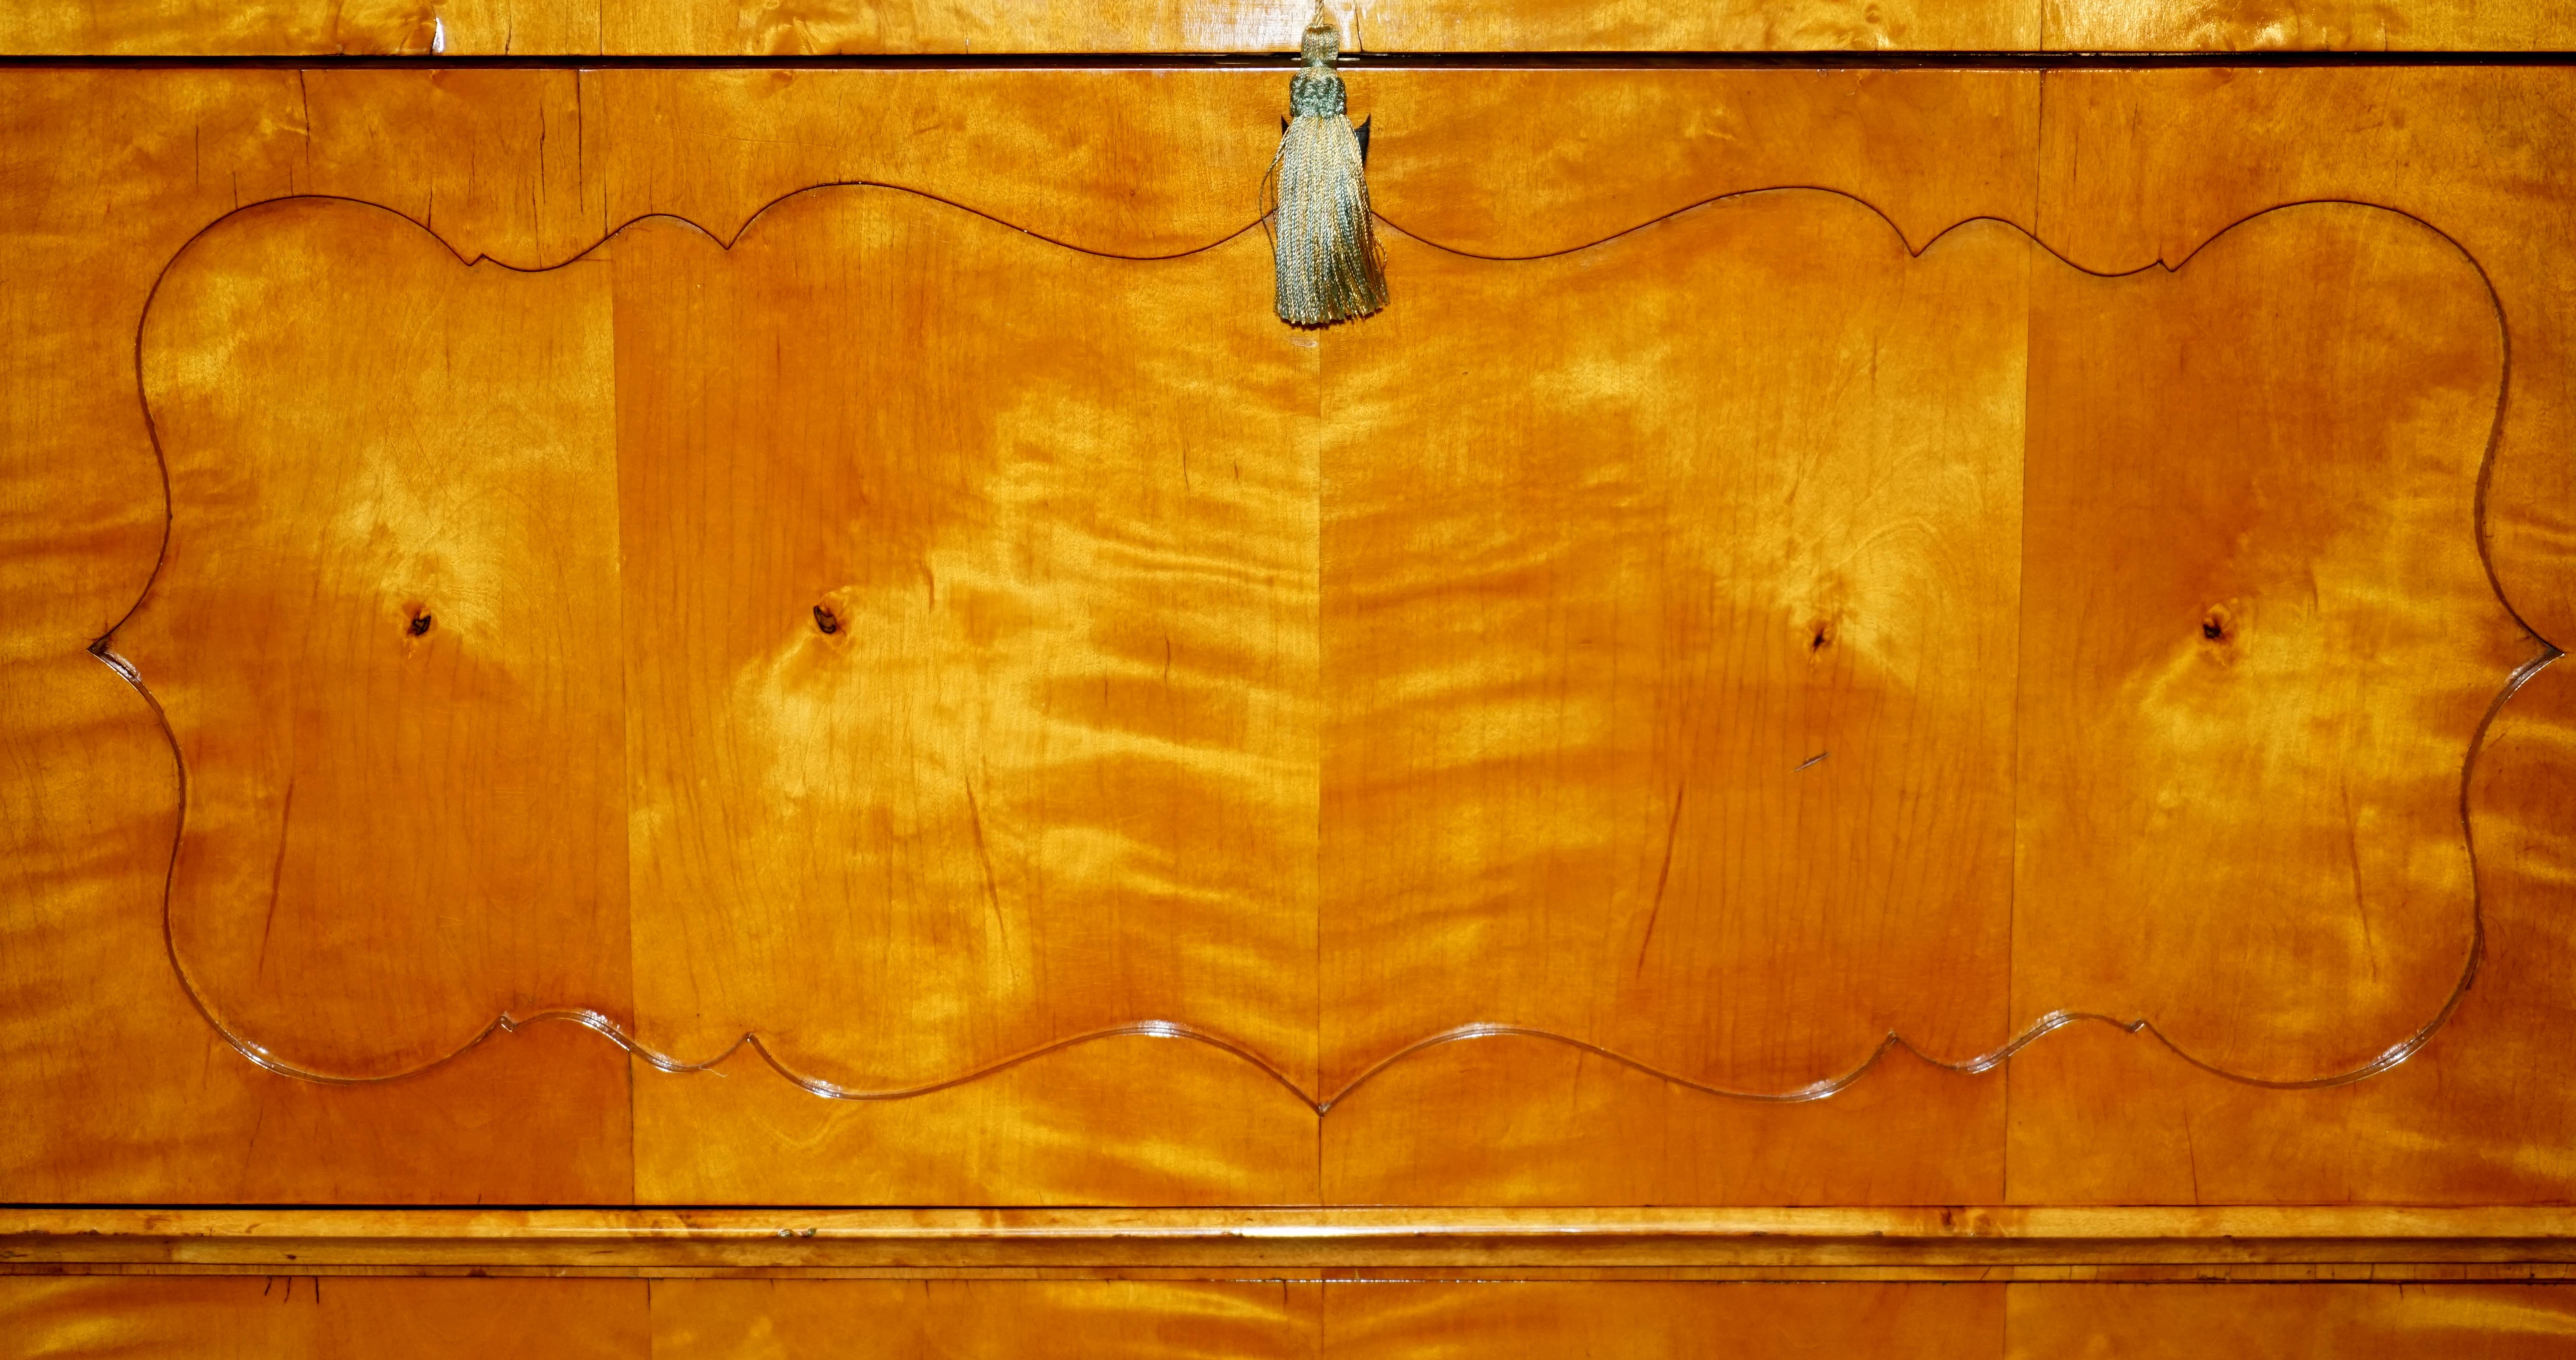 Late 19th Century Antique Burr Walnut Biedermeier Secretaire Desk Drop Front Secretaire Drawers For Sale